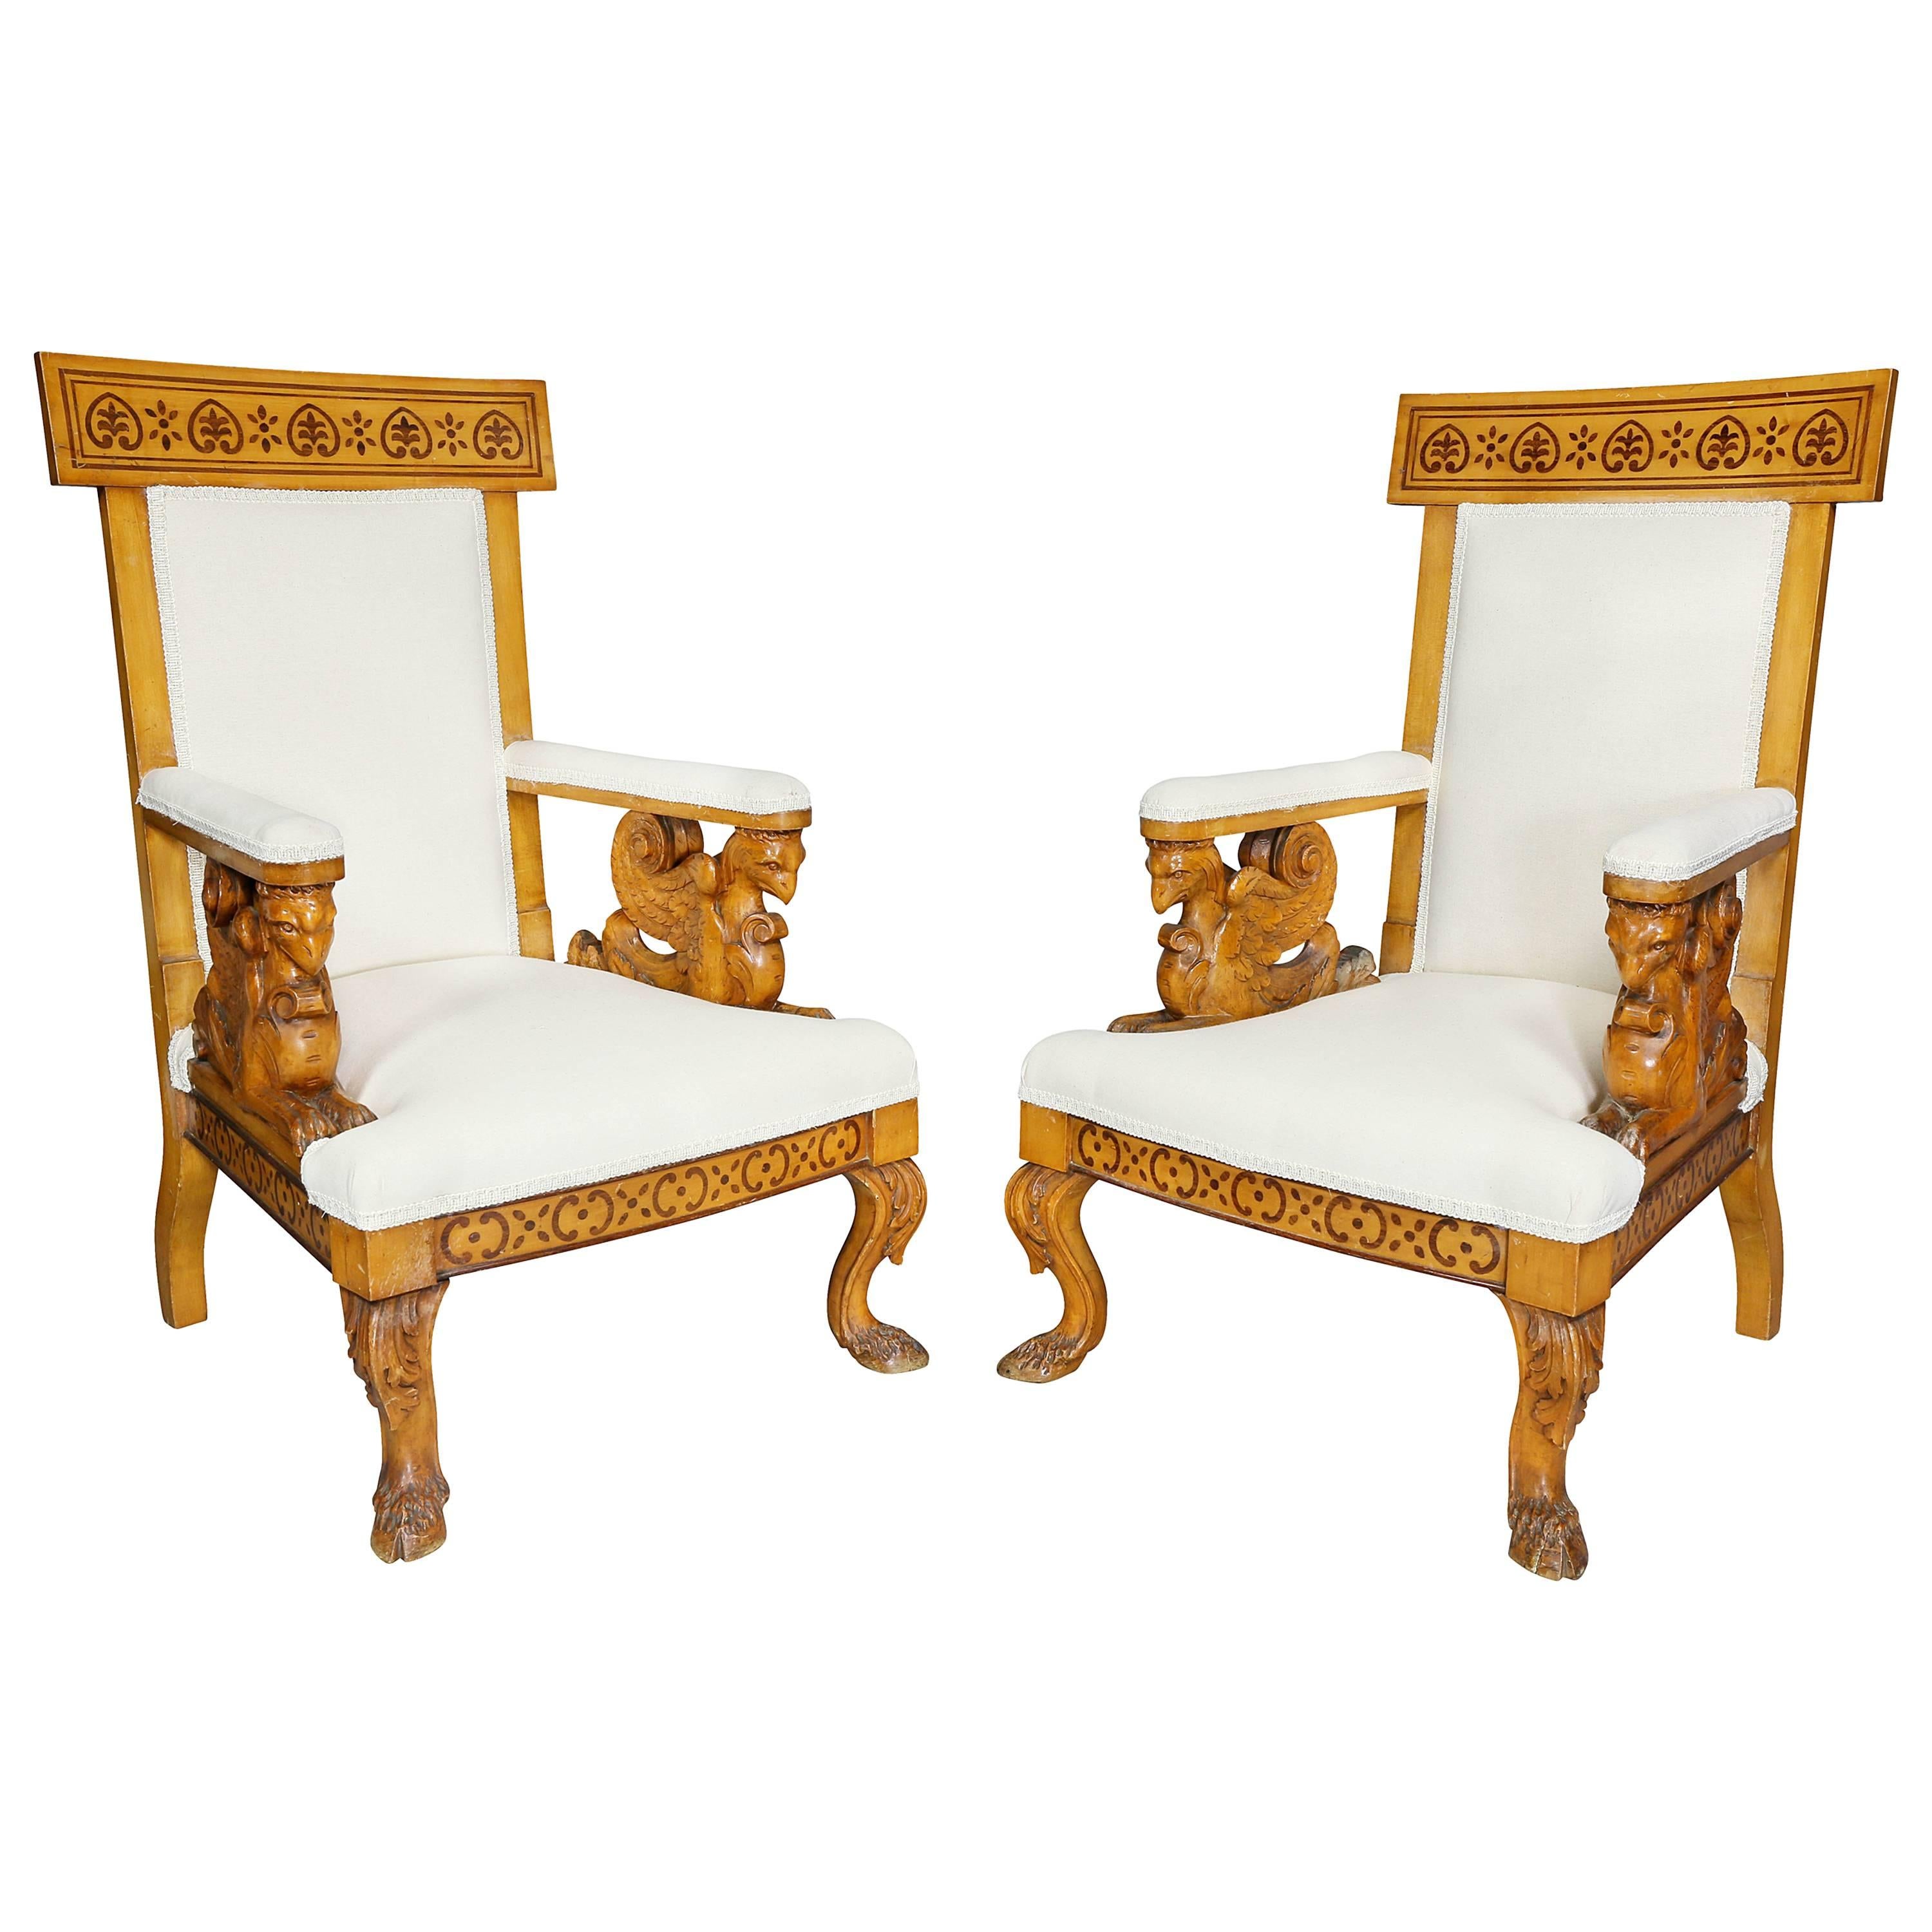 Paar von  Italienische neoklassizistische Sessel aus Ahornholz, Pelagio Palagi zugeschrieben